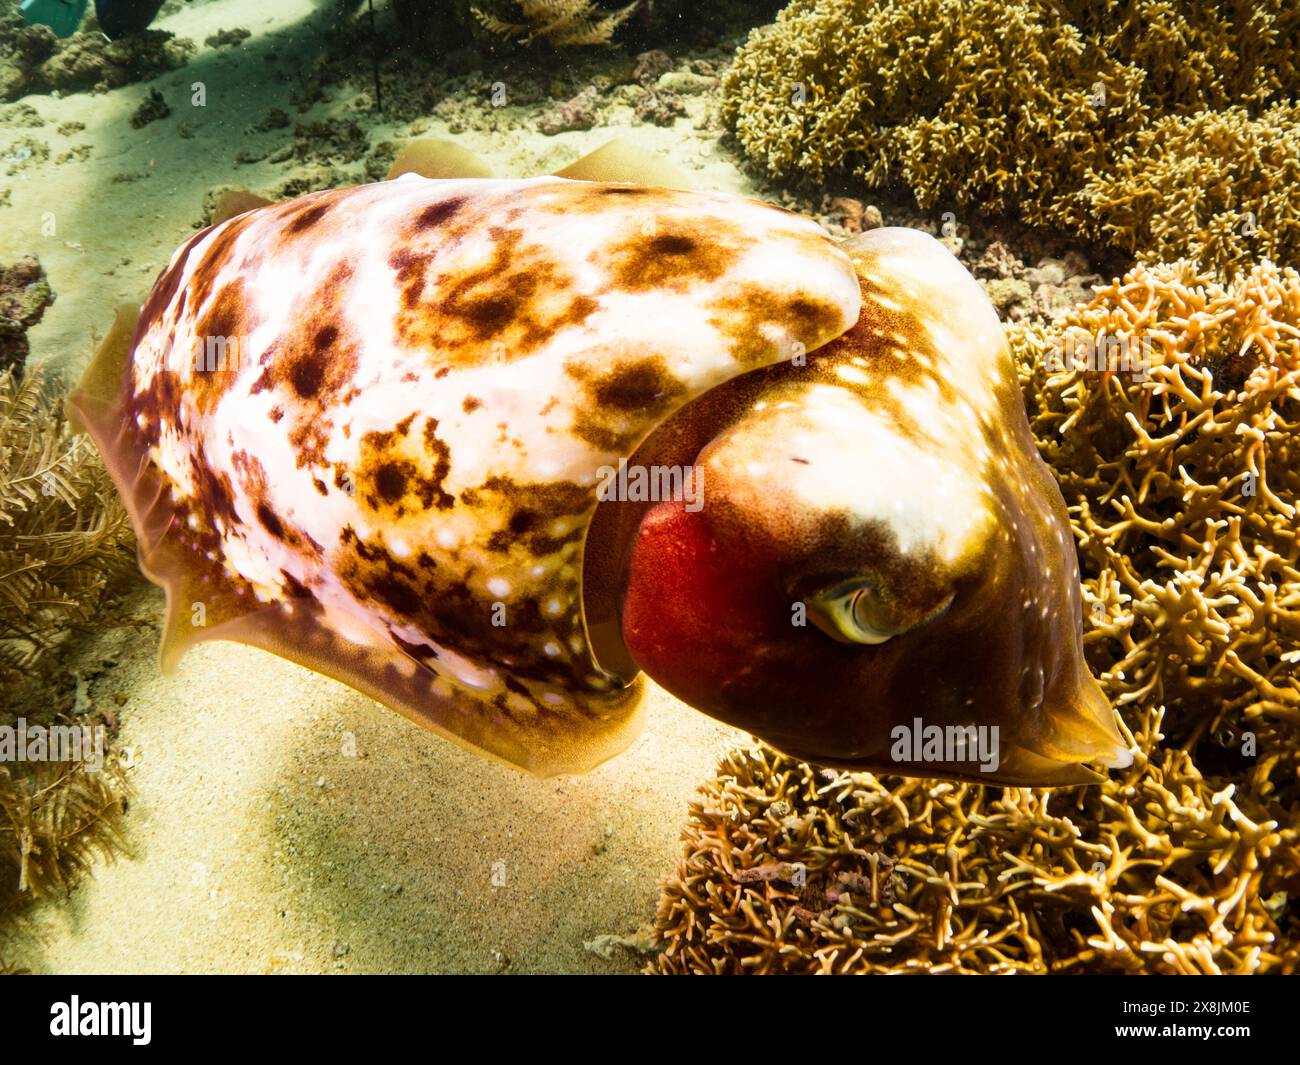 Tintenfisch, Sepia latimanus, in den flachen Korallen von Banda Neira, Indonesien Stockfoto